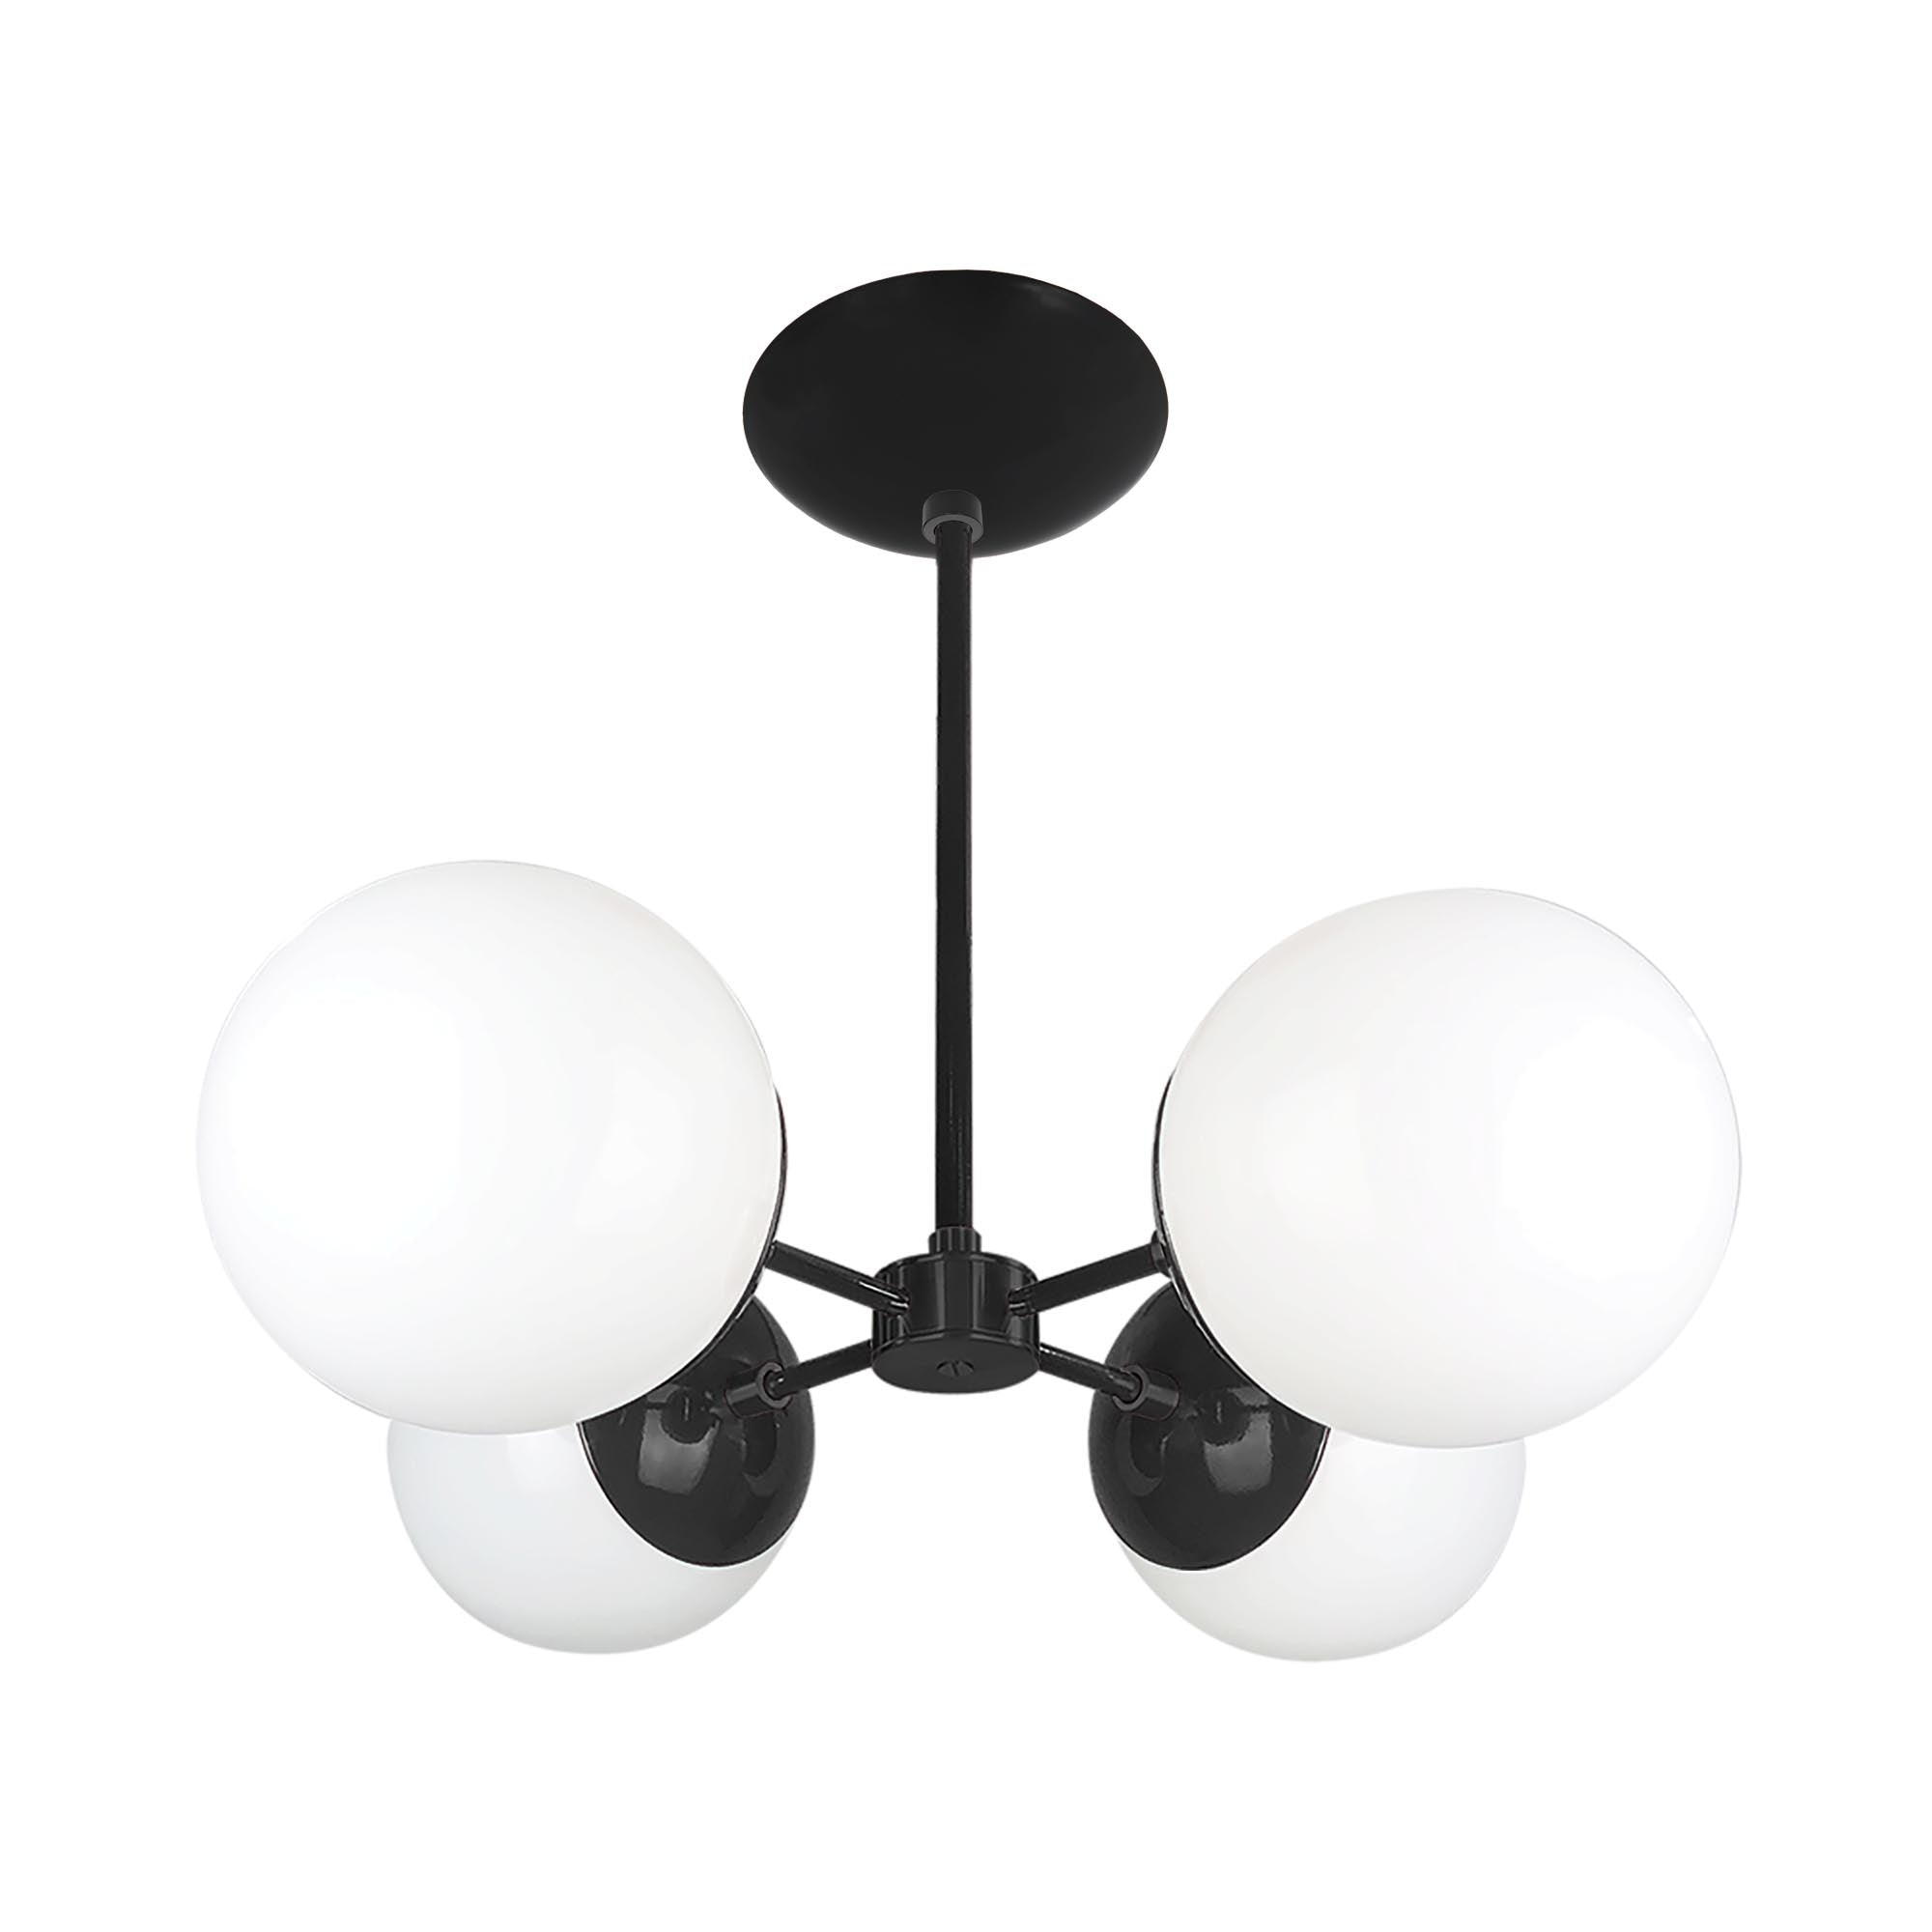 Black and black color Orbi chandelier Dutton Brown lighting